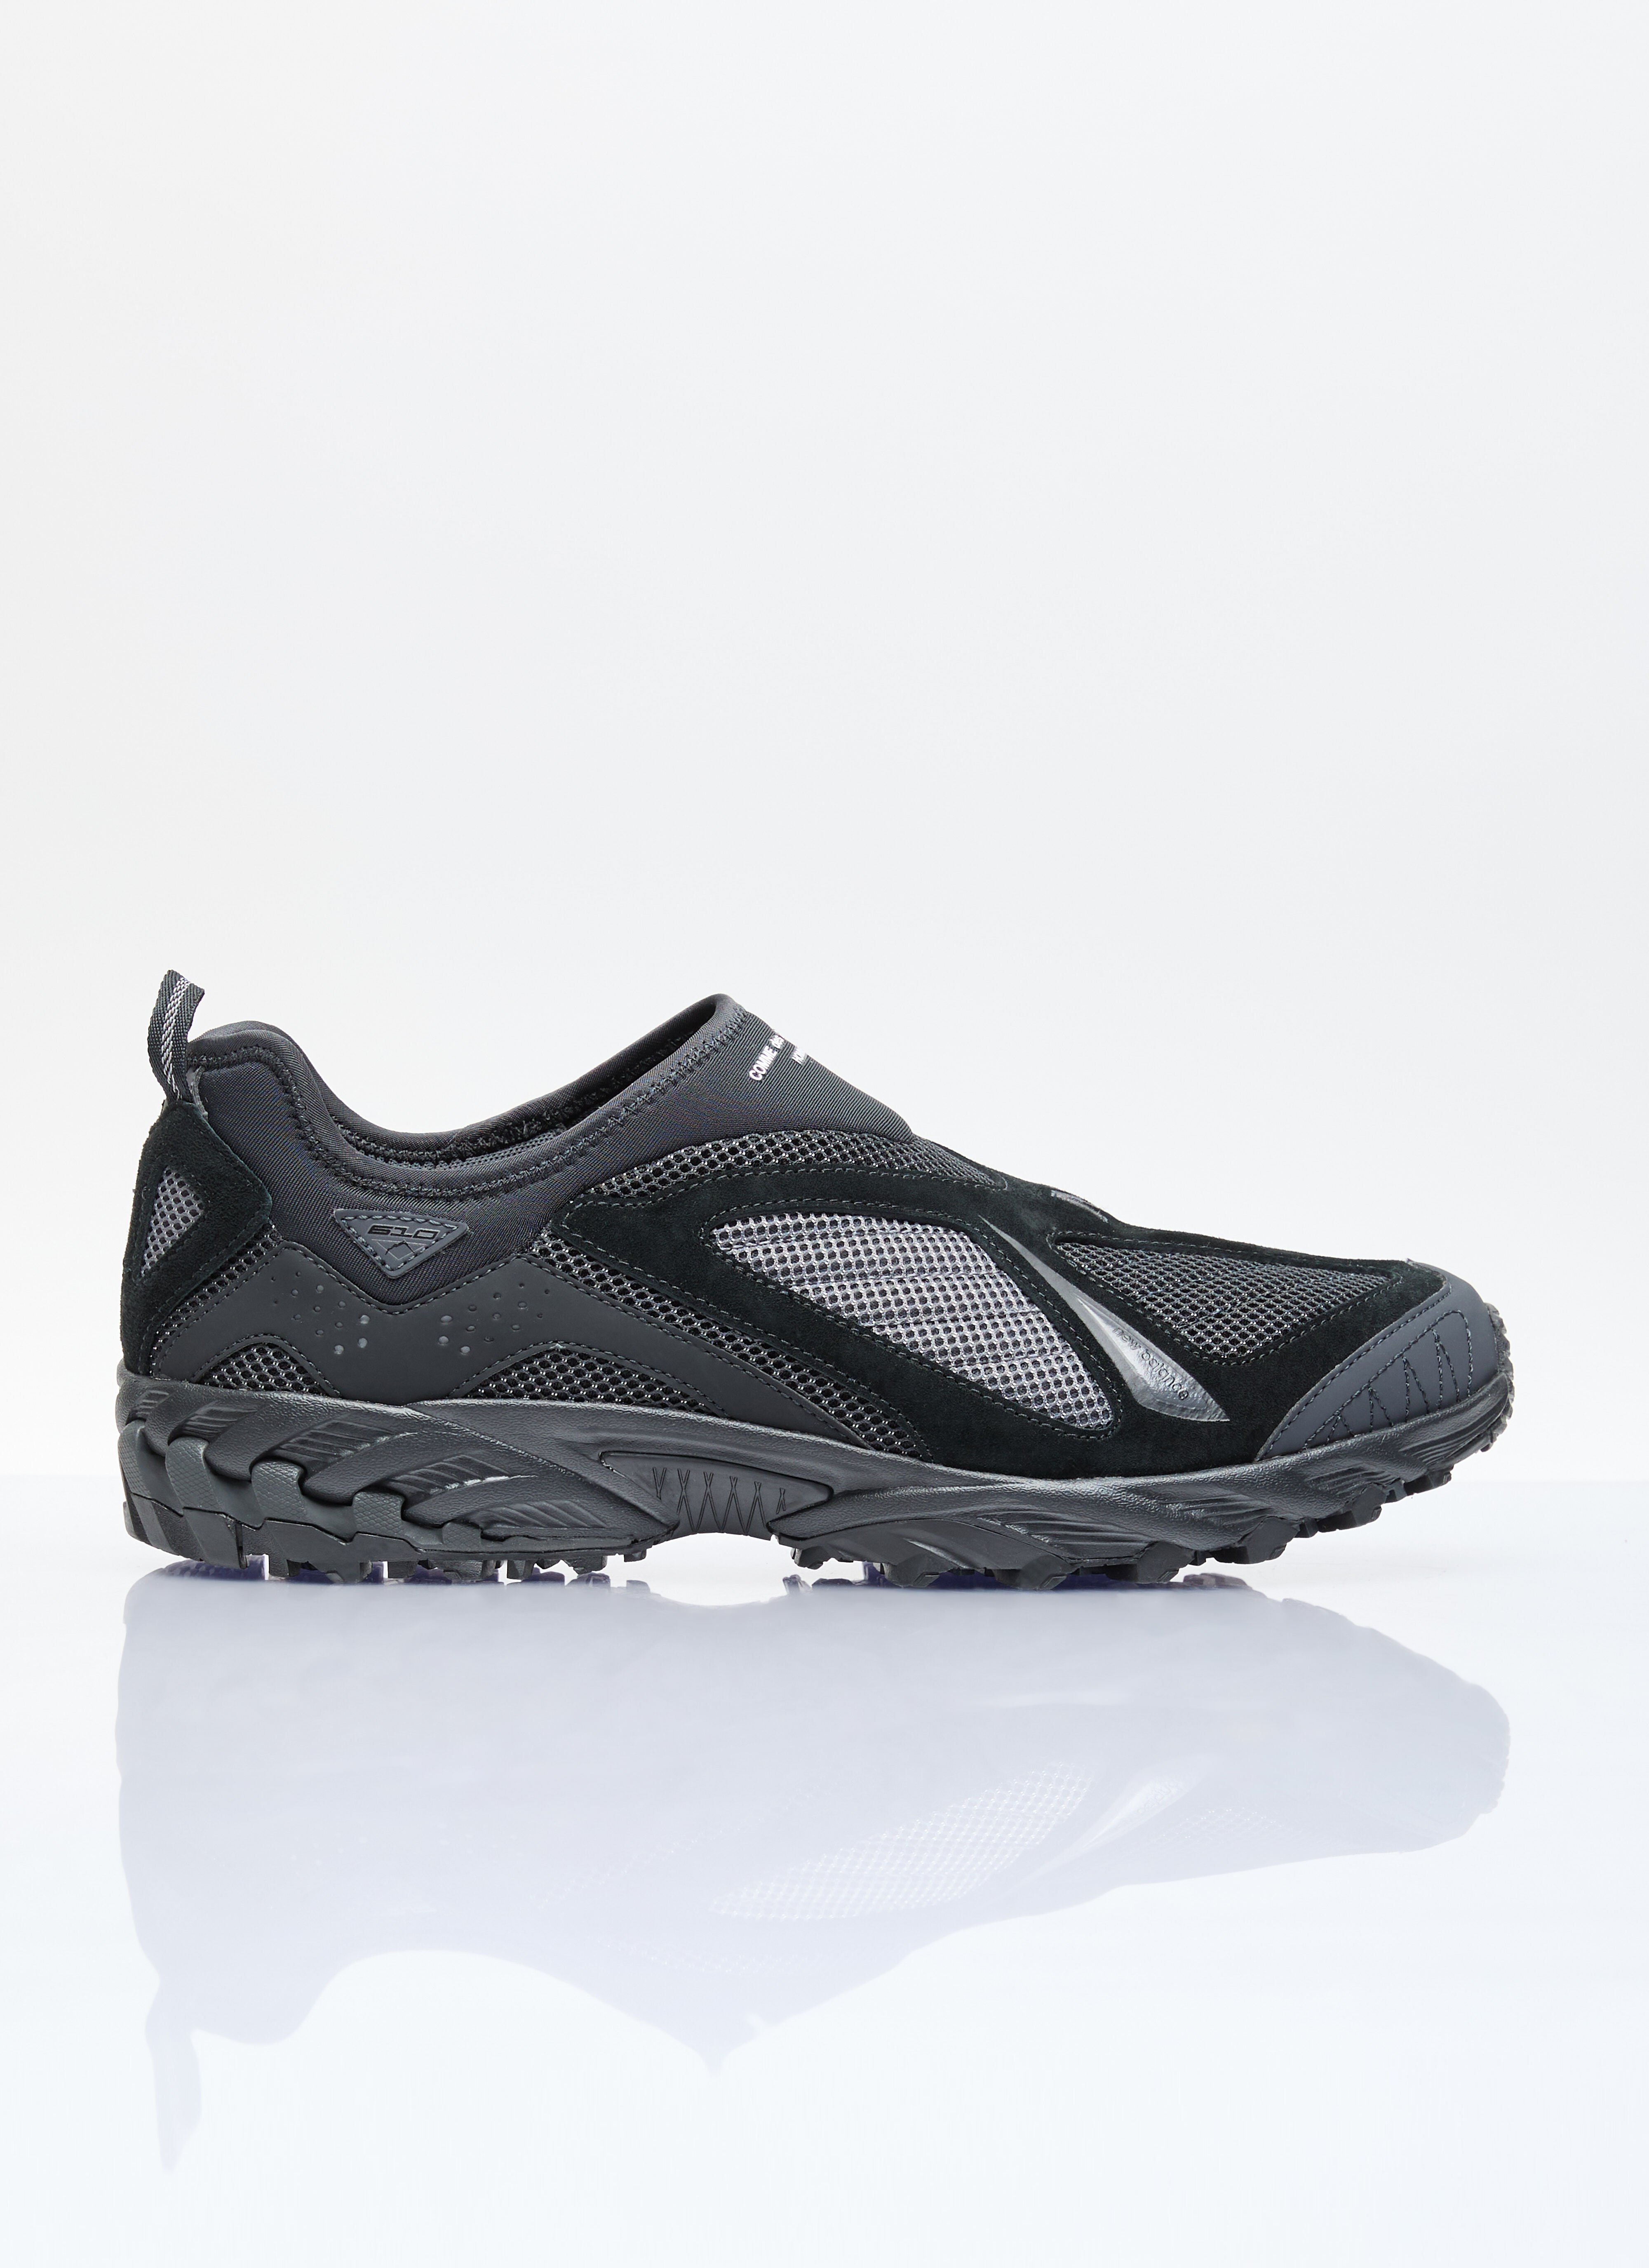 Comme des Garçons Homme 610 运动鞋 黑色 cdh0156013